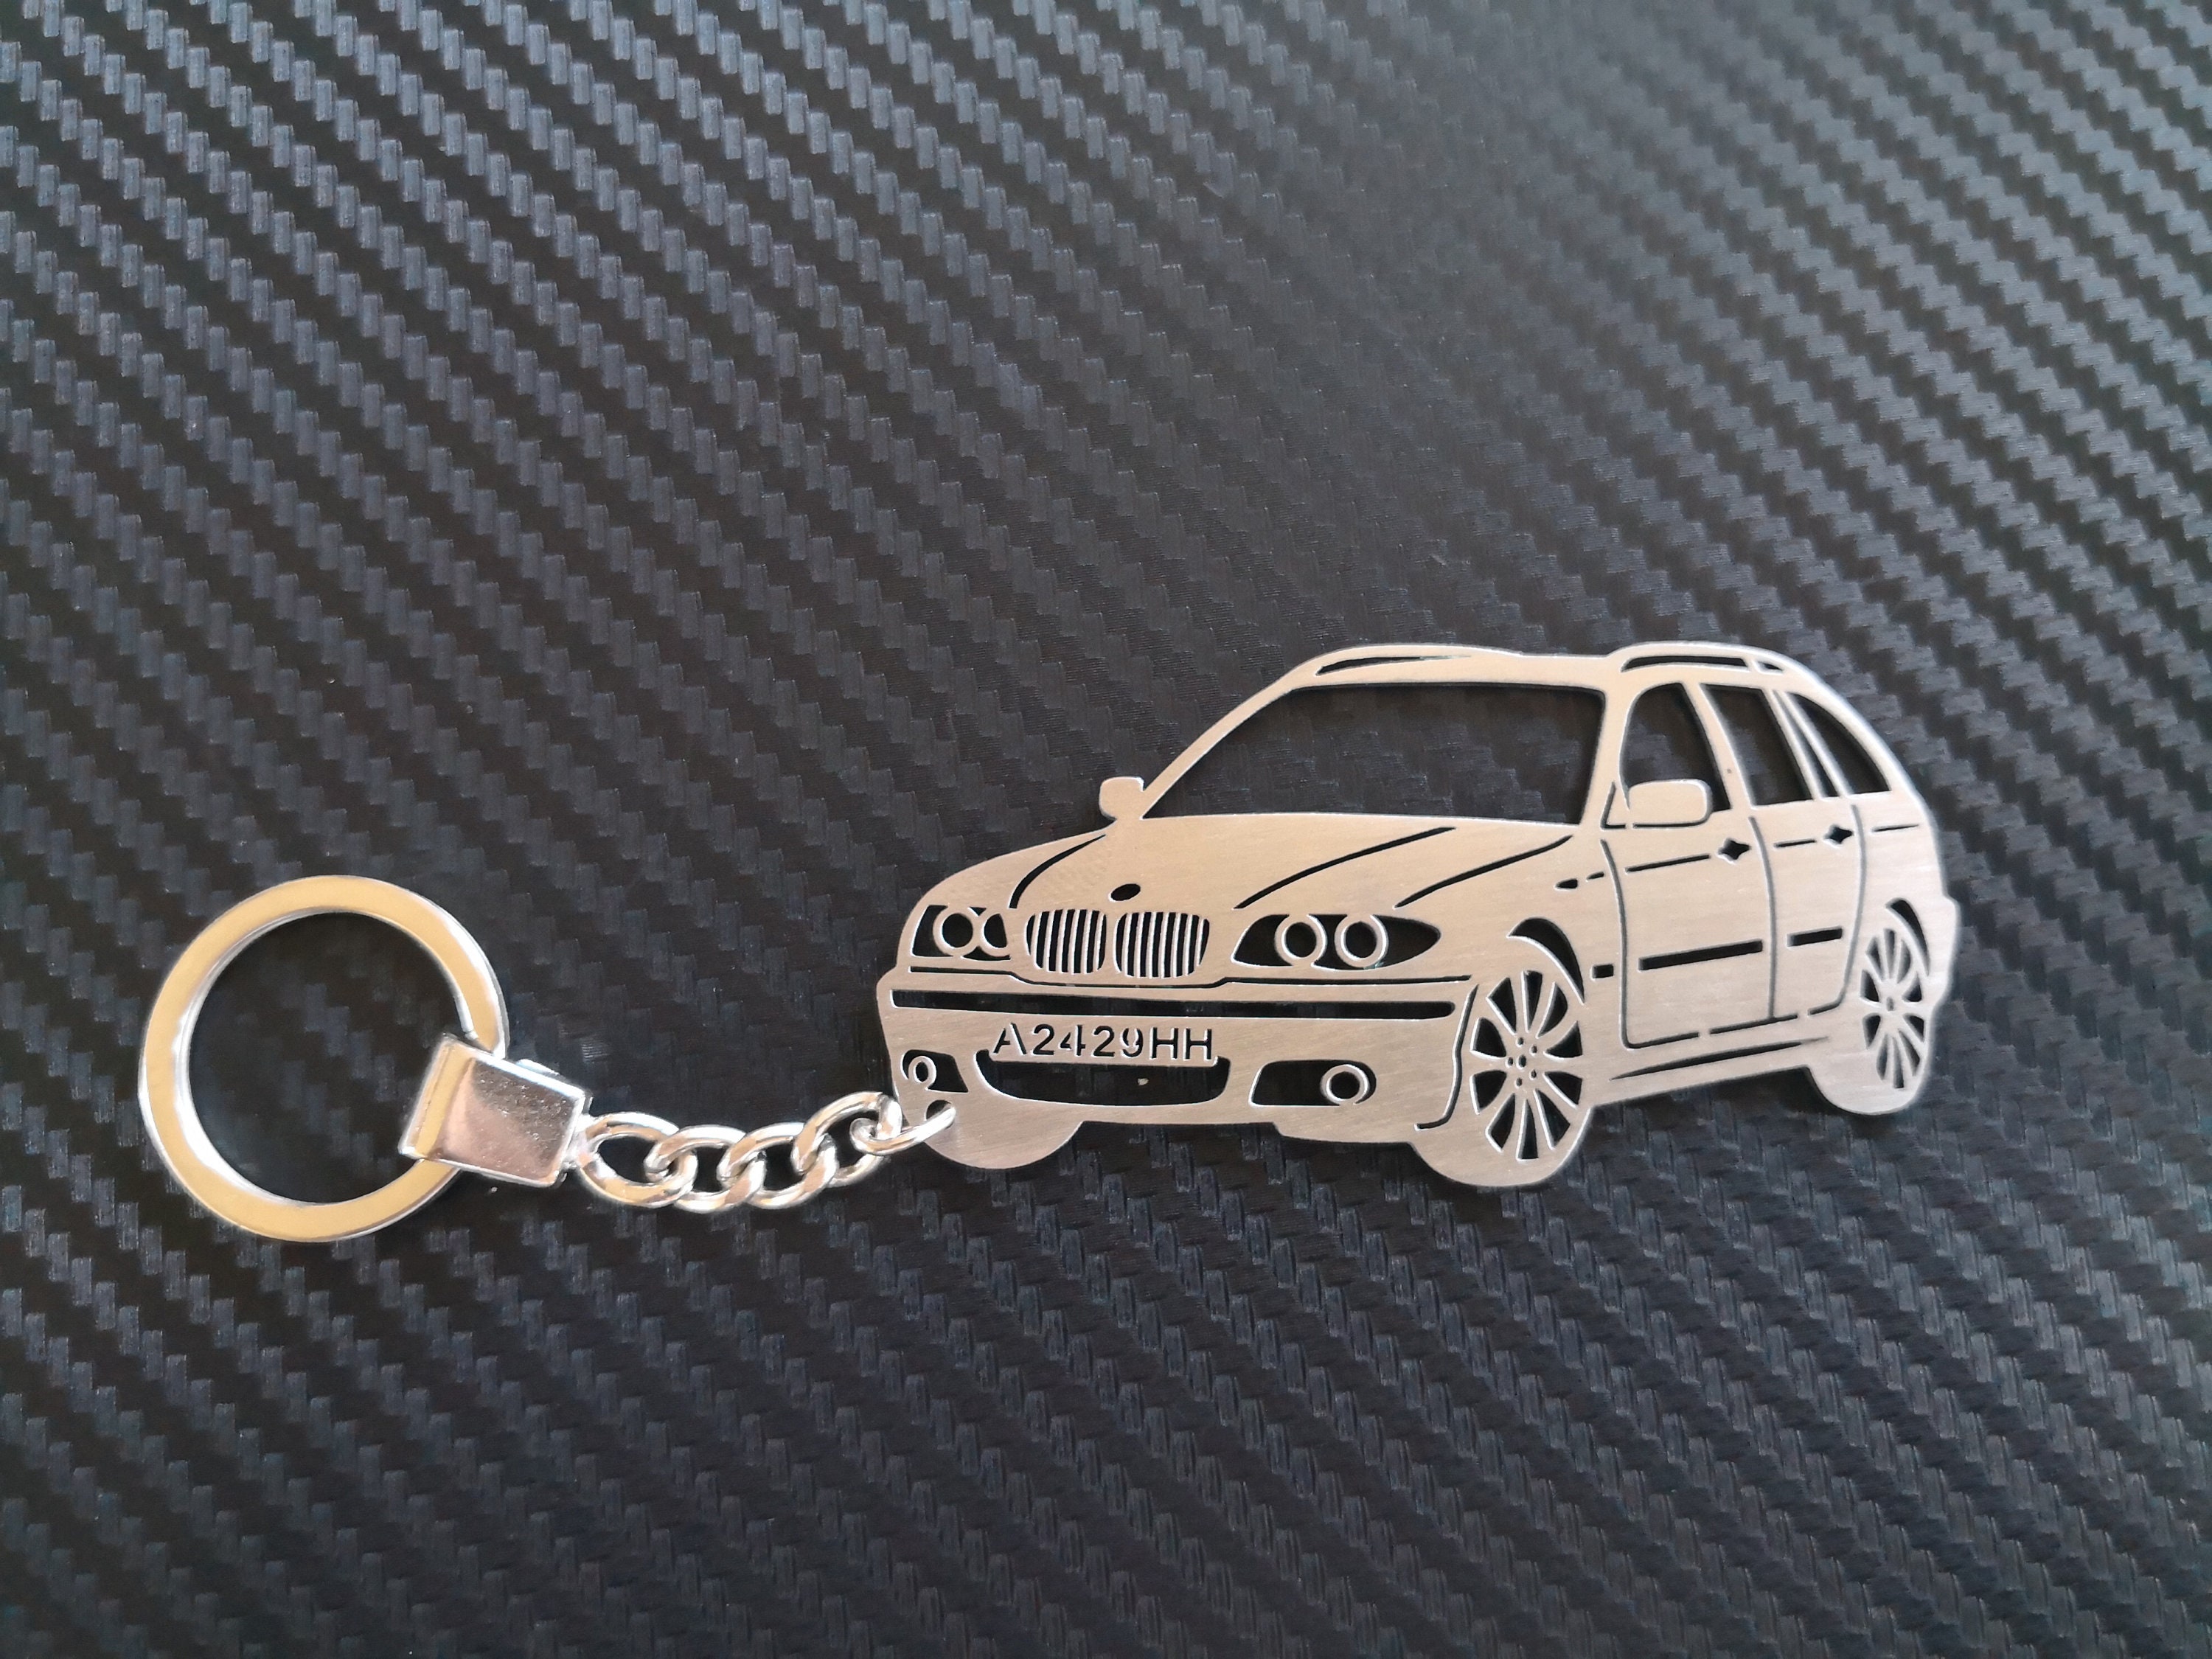 Custom Auto Schlüsselanhänger für BMW e46 Face touning, Edelstahl  Schlüsselanhänger für Geburtstagsgeschenk mit individuellem Text - .de